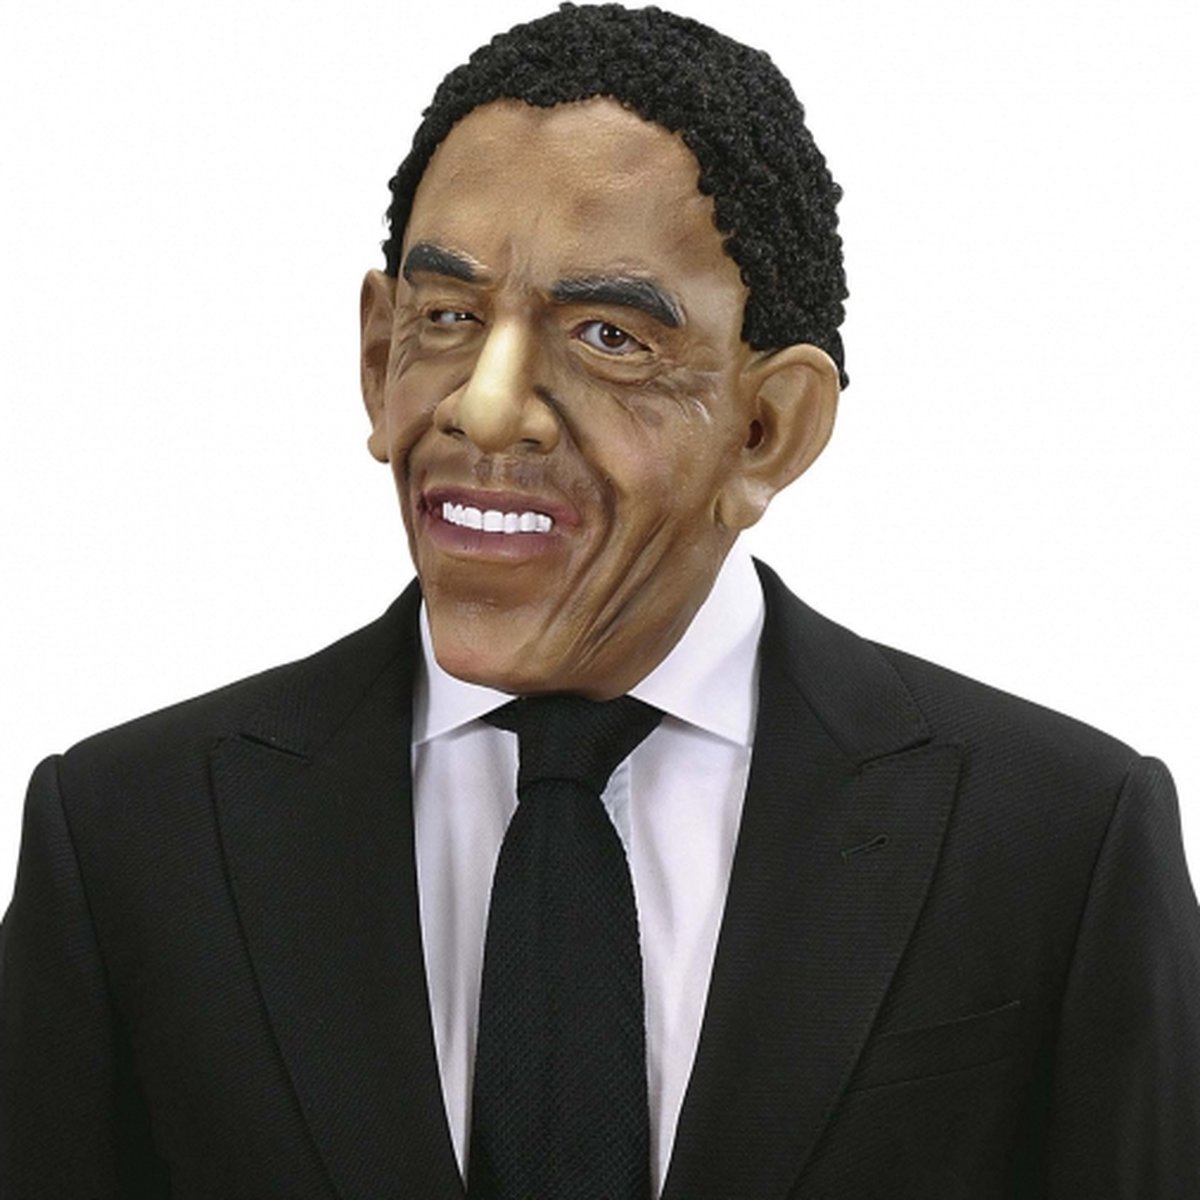 President Obama masker met pruik